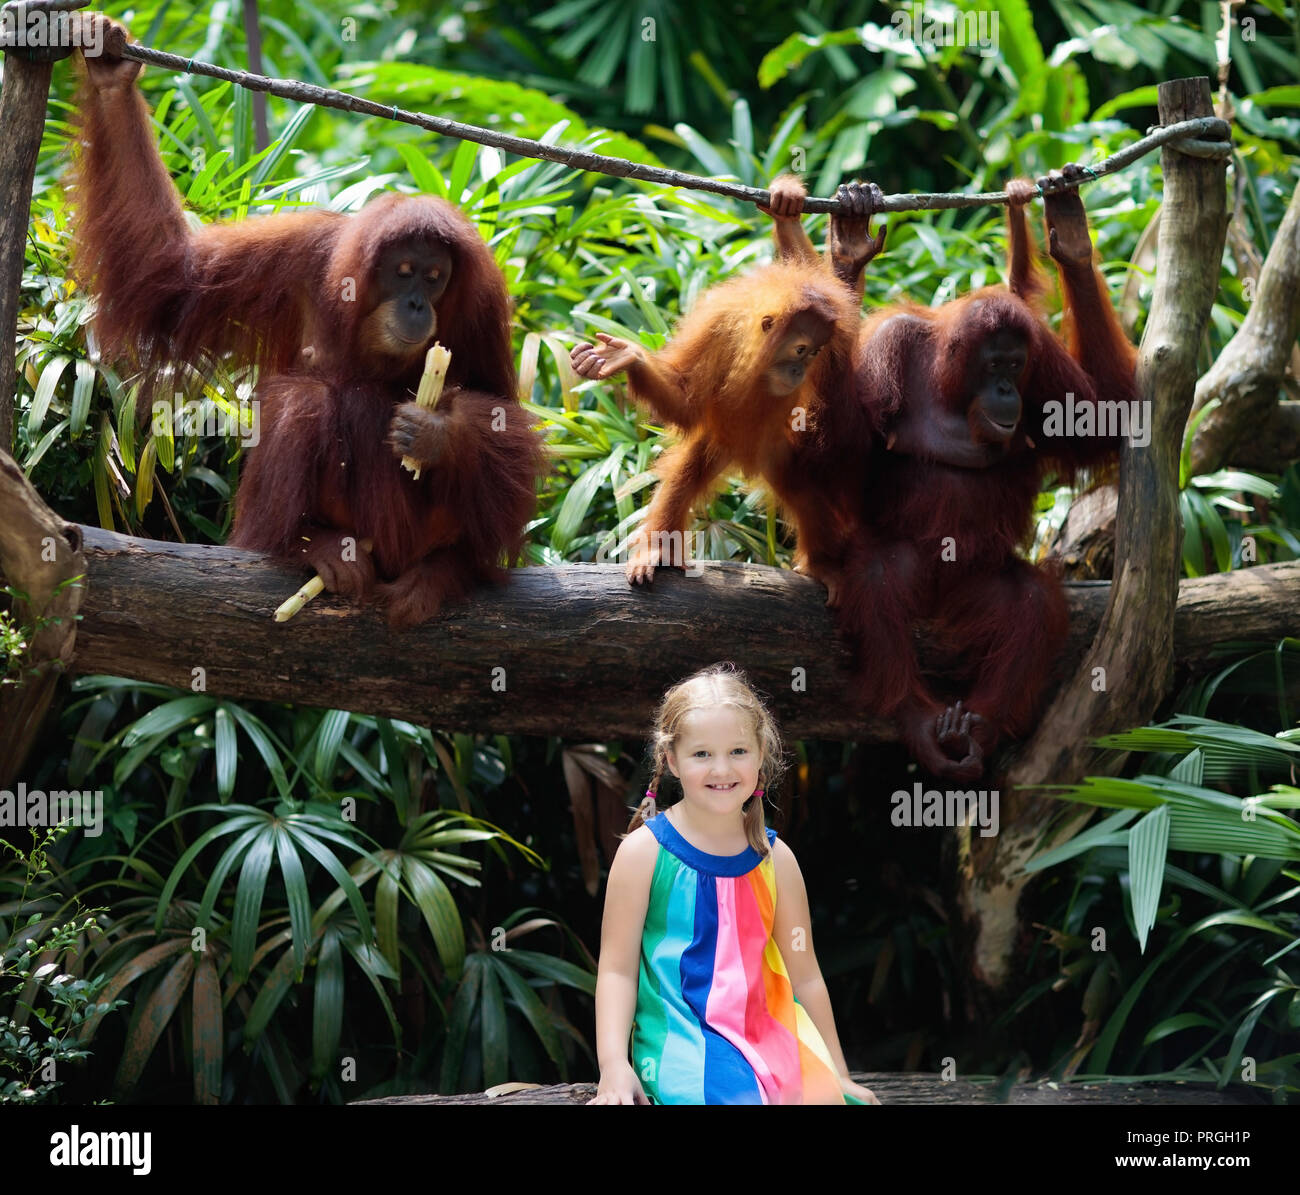 Bambini Watch orangutan scimmie nello zoo. Bambina con orangutan in tropicale del parco safari sulla vacanza estiva in Asia. Borneo fauna selvatica. Kid e wild ani Foto Stock